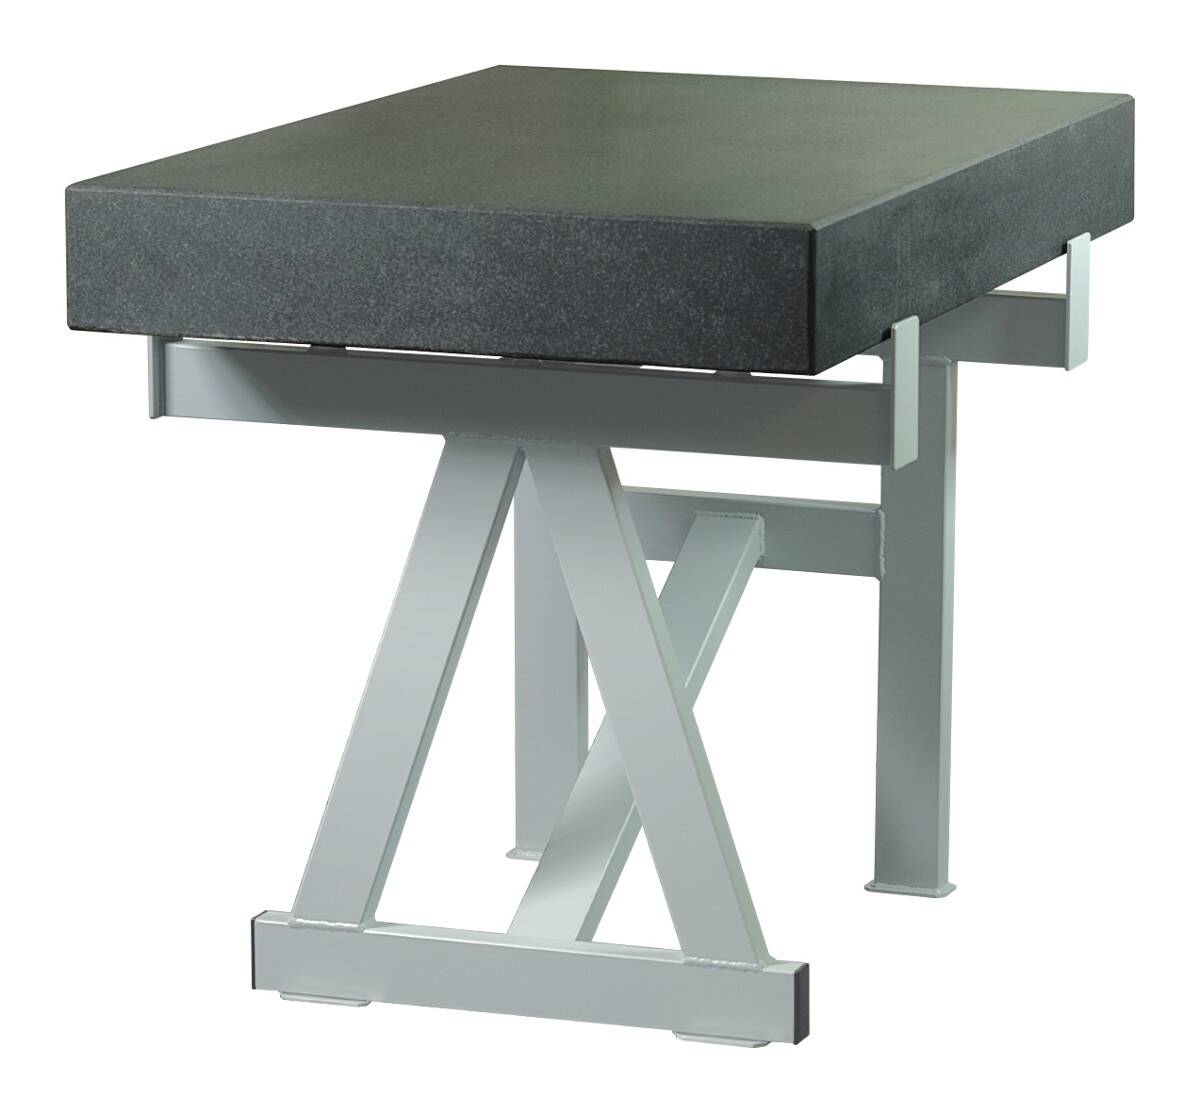 SCHUT stół do płyty pomiarowej żeliwnej 1000x1000mm 131.029